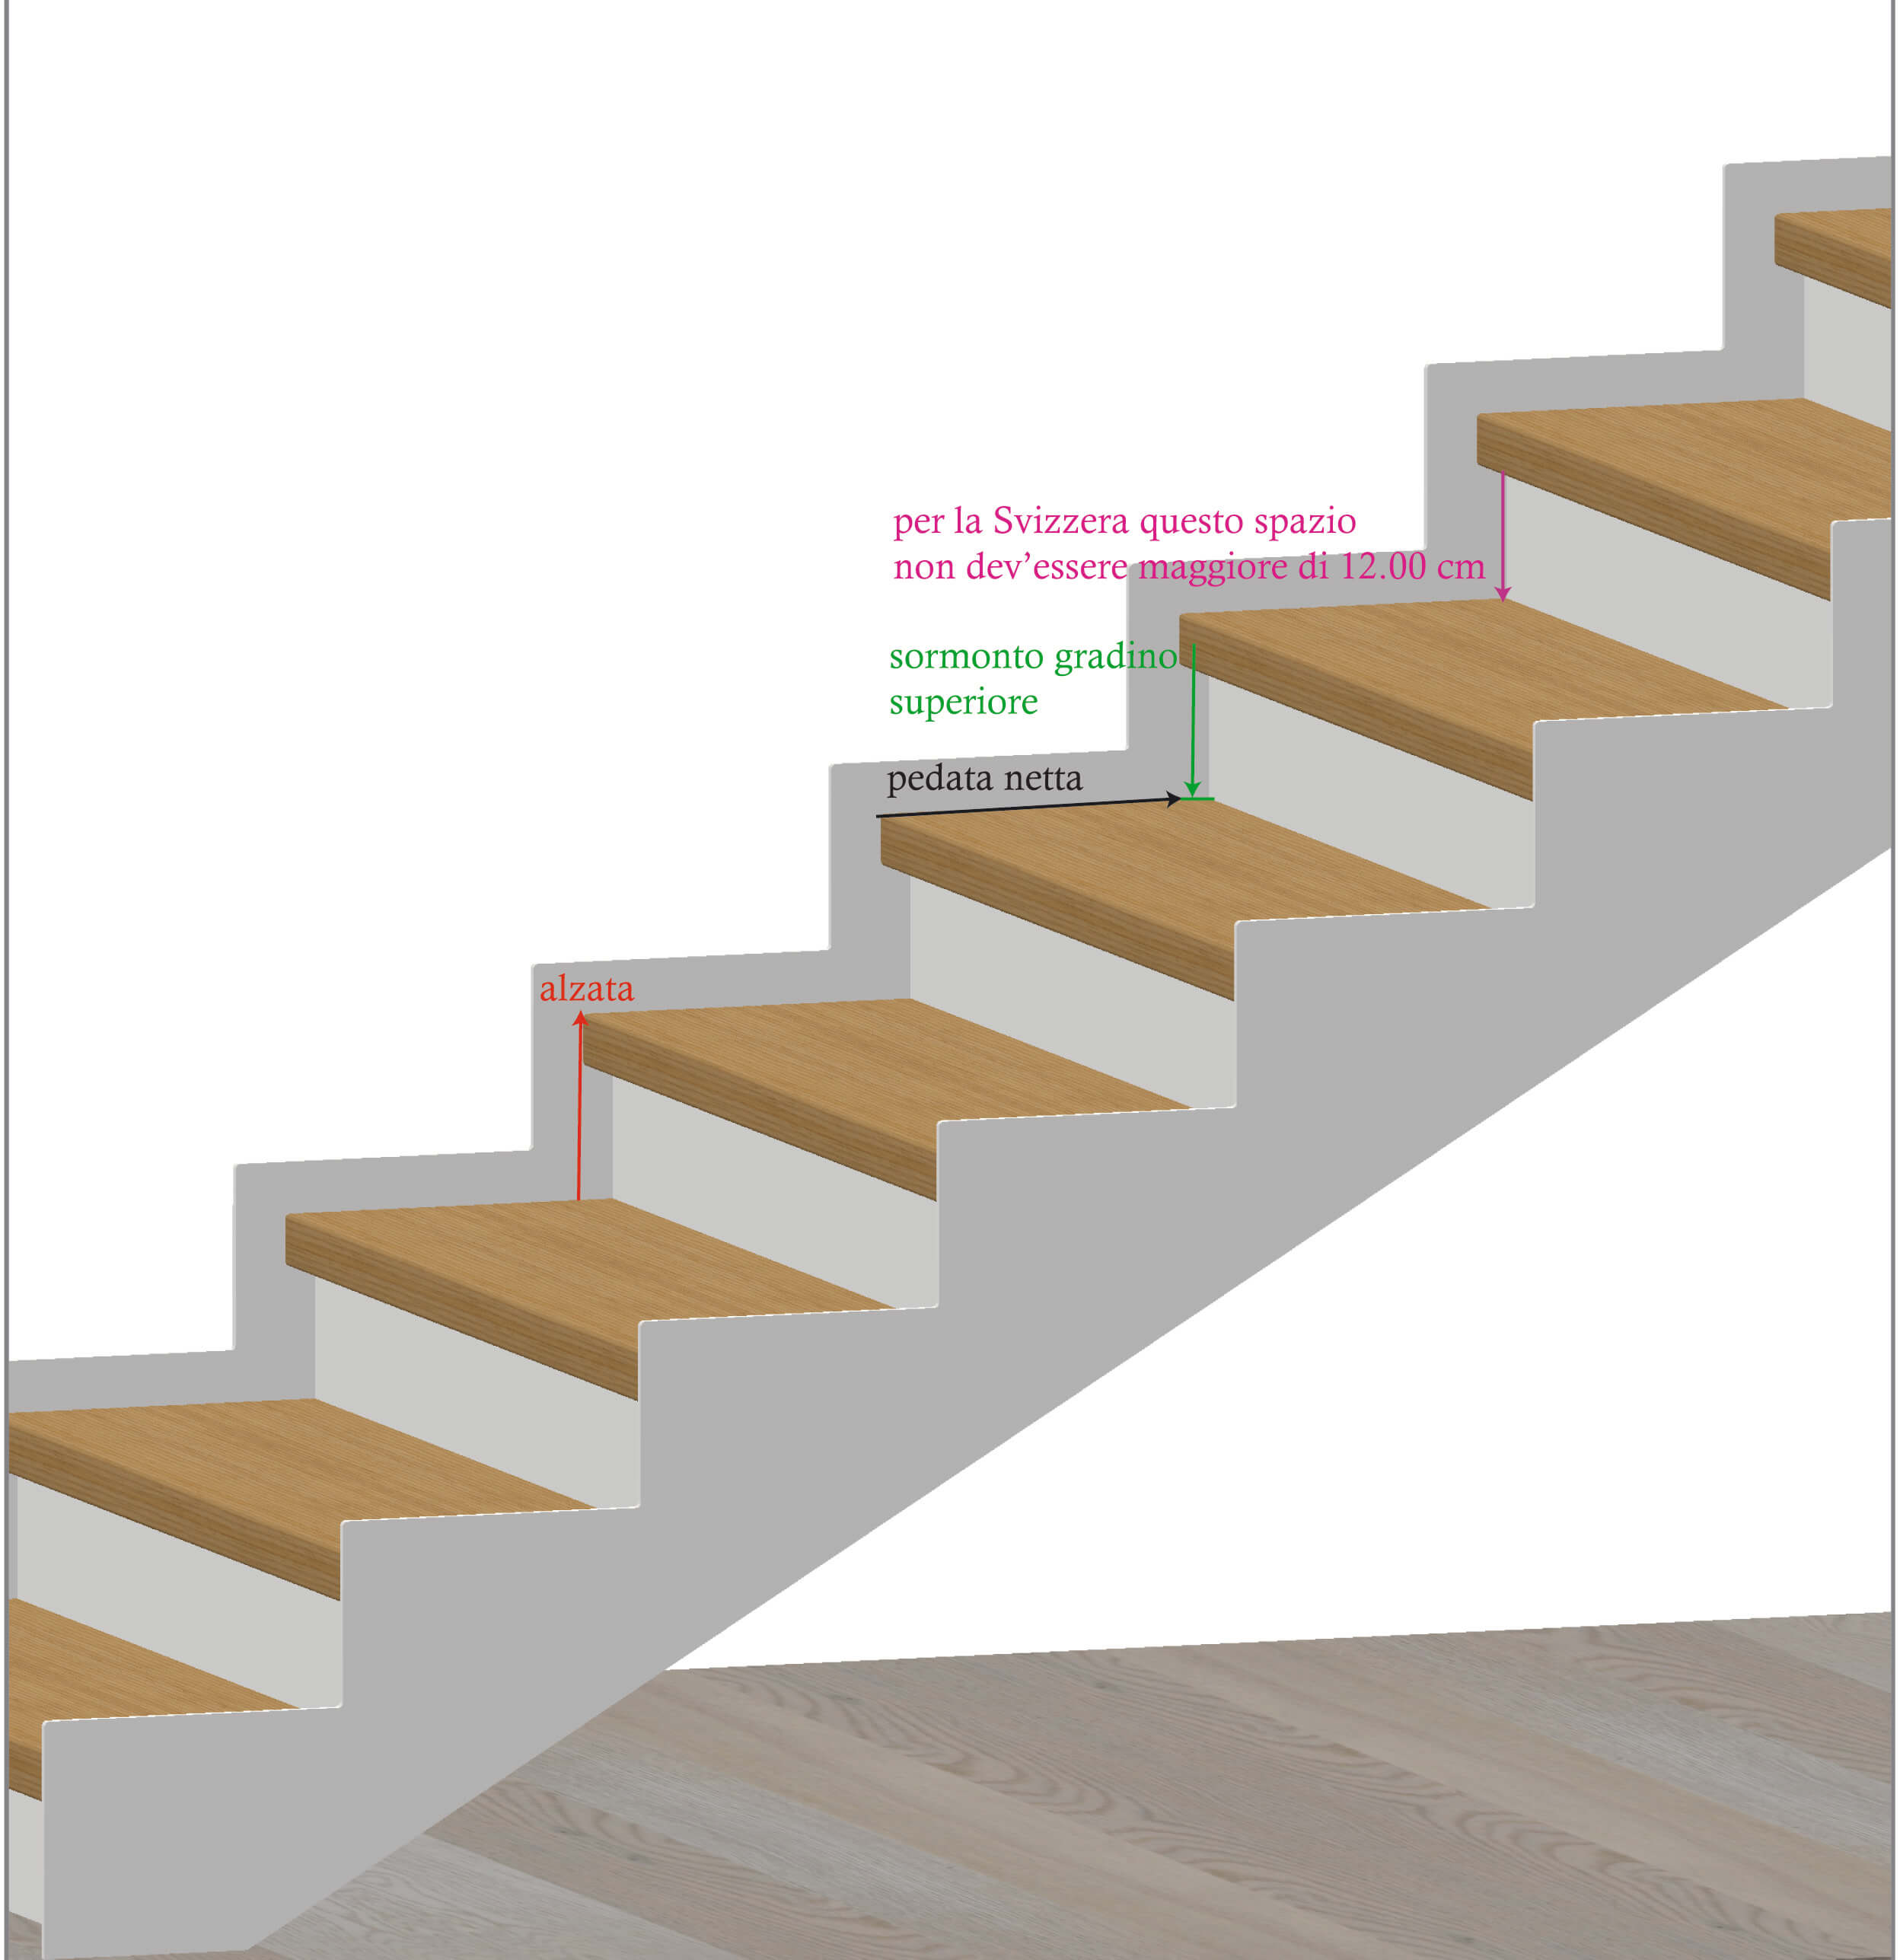 Esempio di terminologia e vincoli normativi per le scale